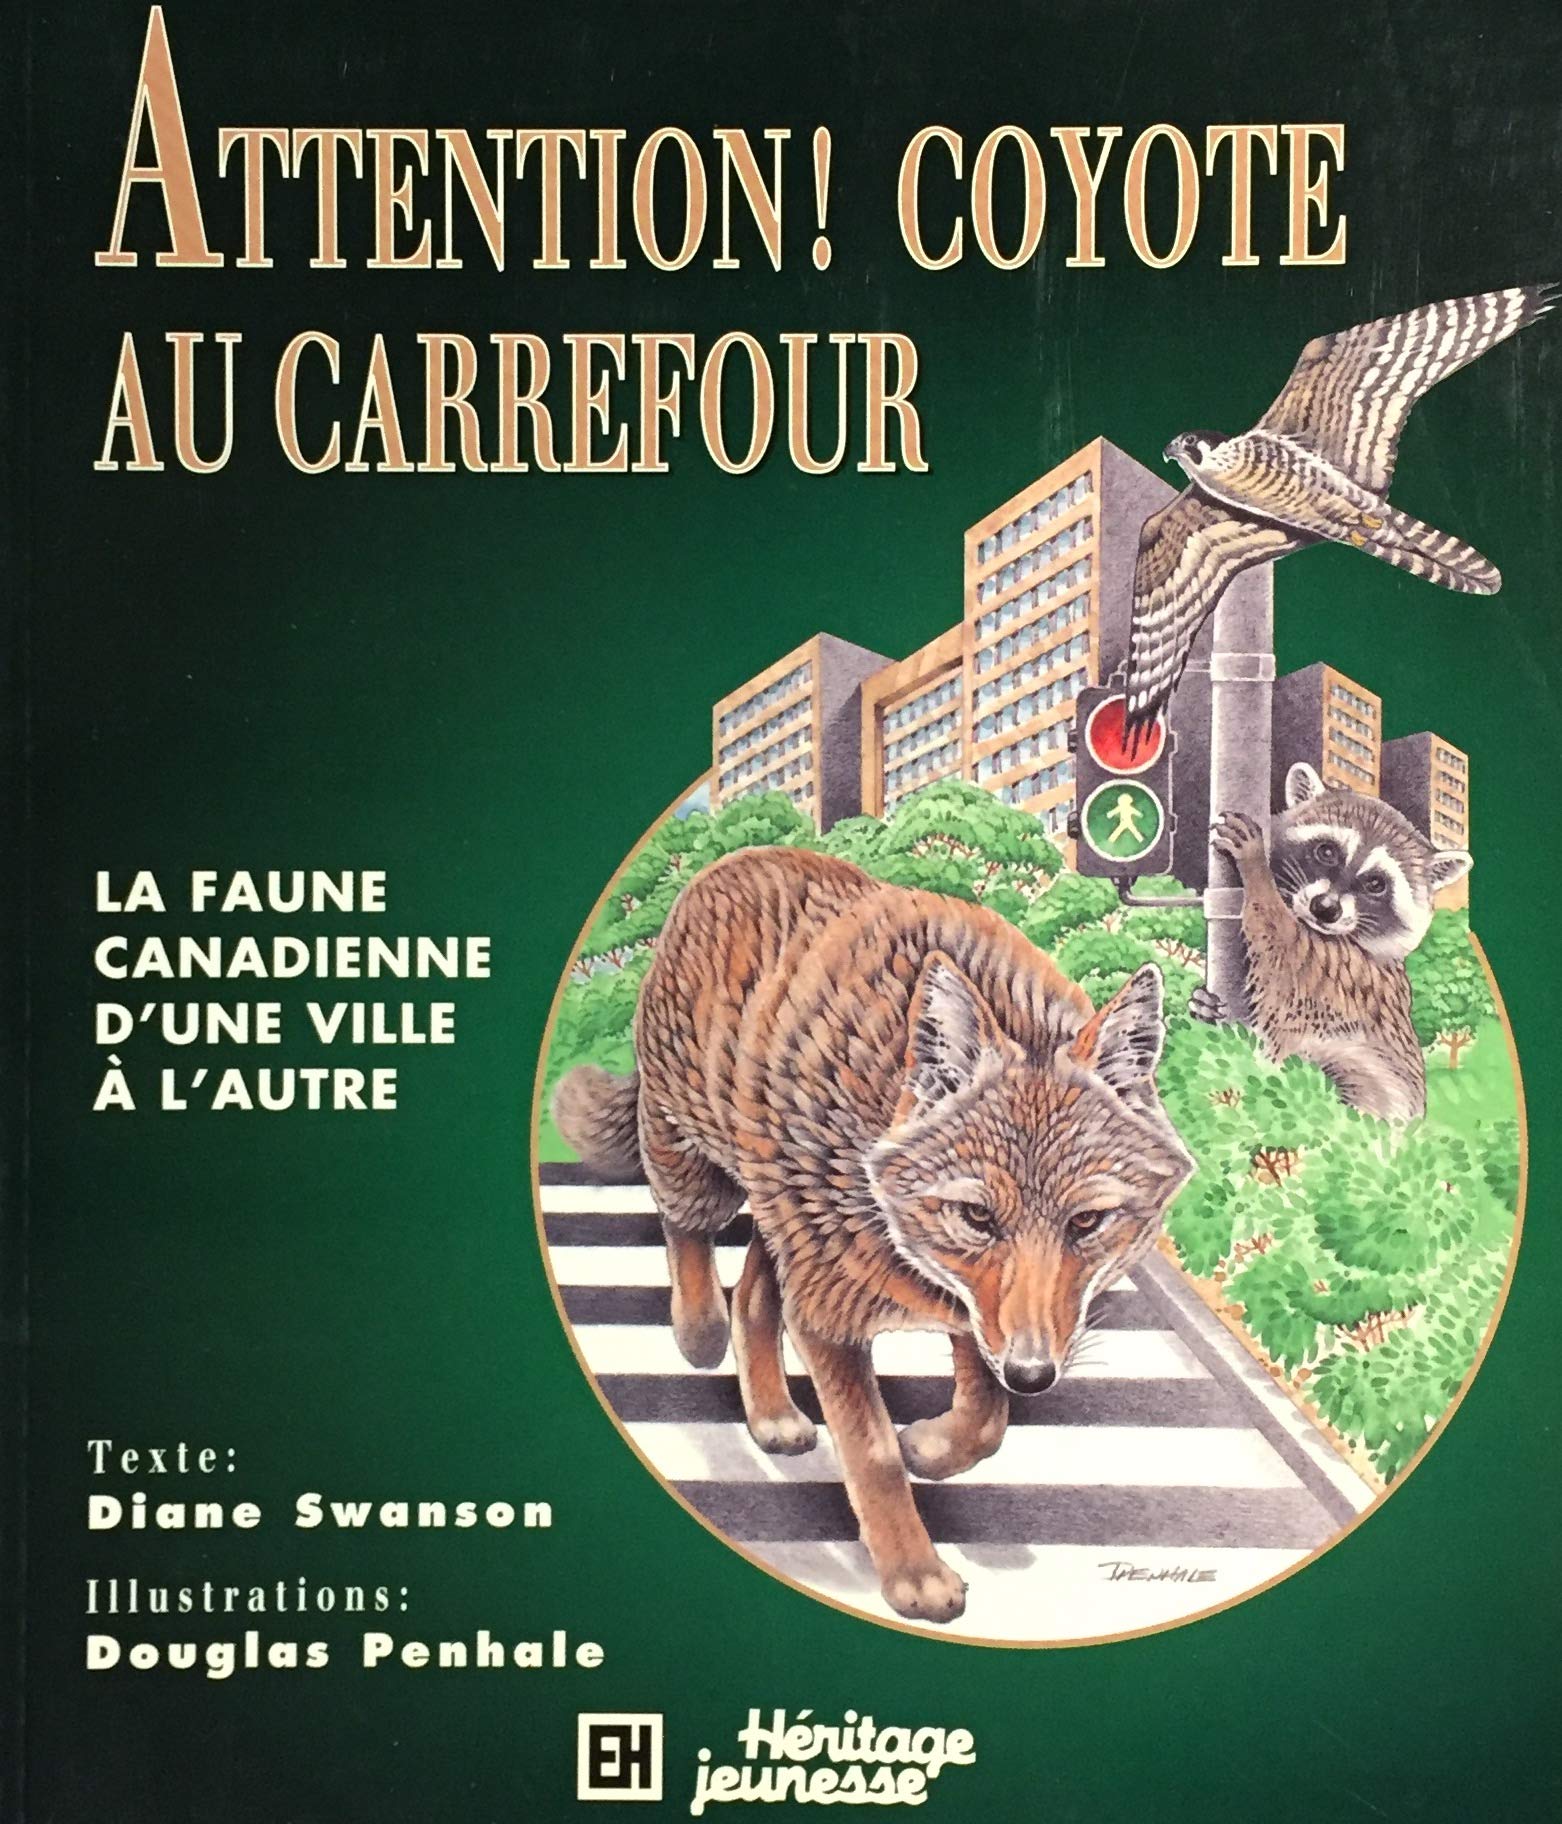 Livre ISBN 2762579236 Attention! Coyote au carrefour : La faune canadienne d'une ville à l'autre (Diane Swanson)